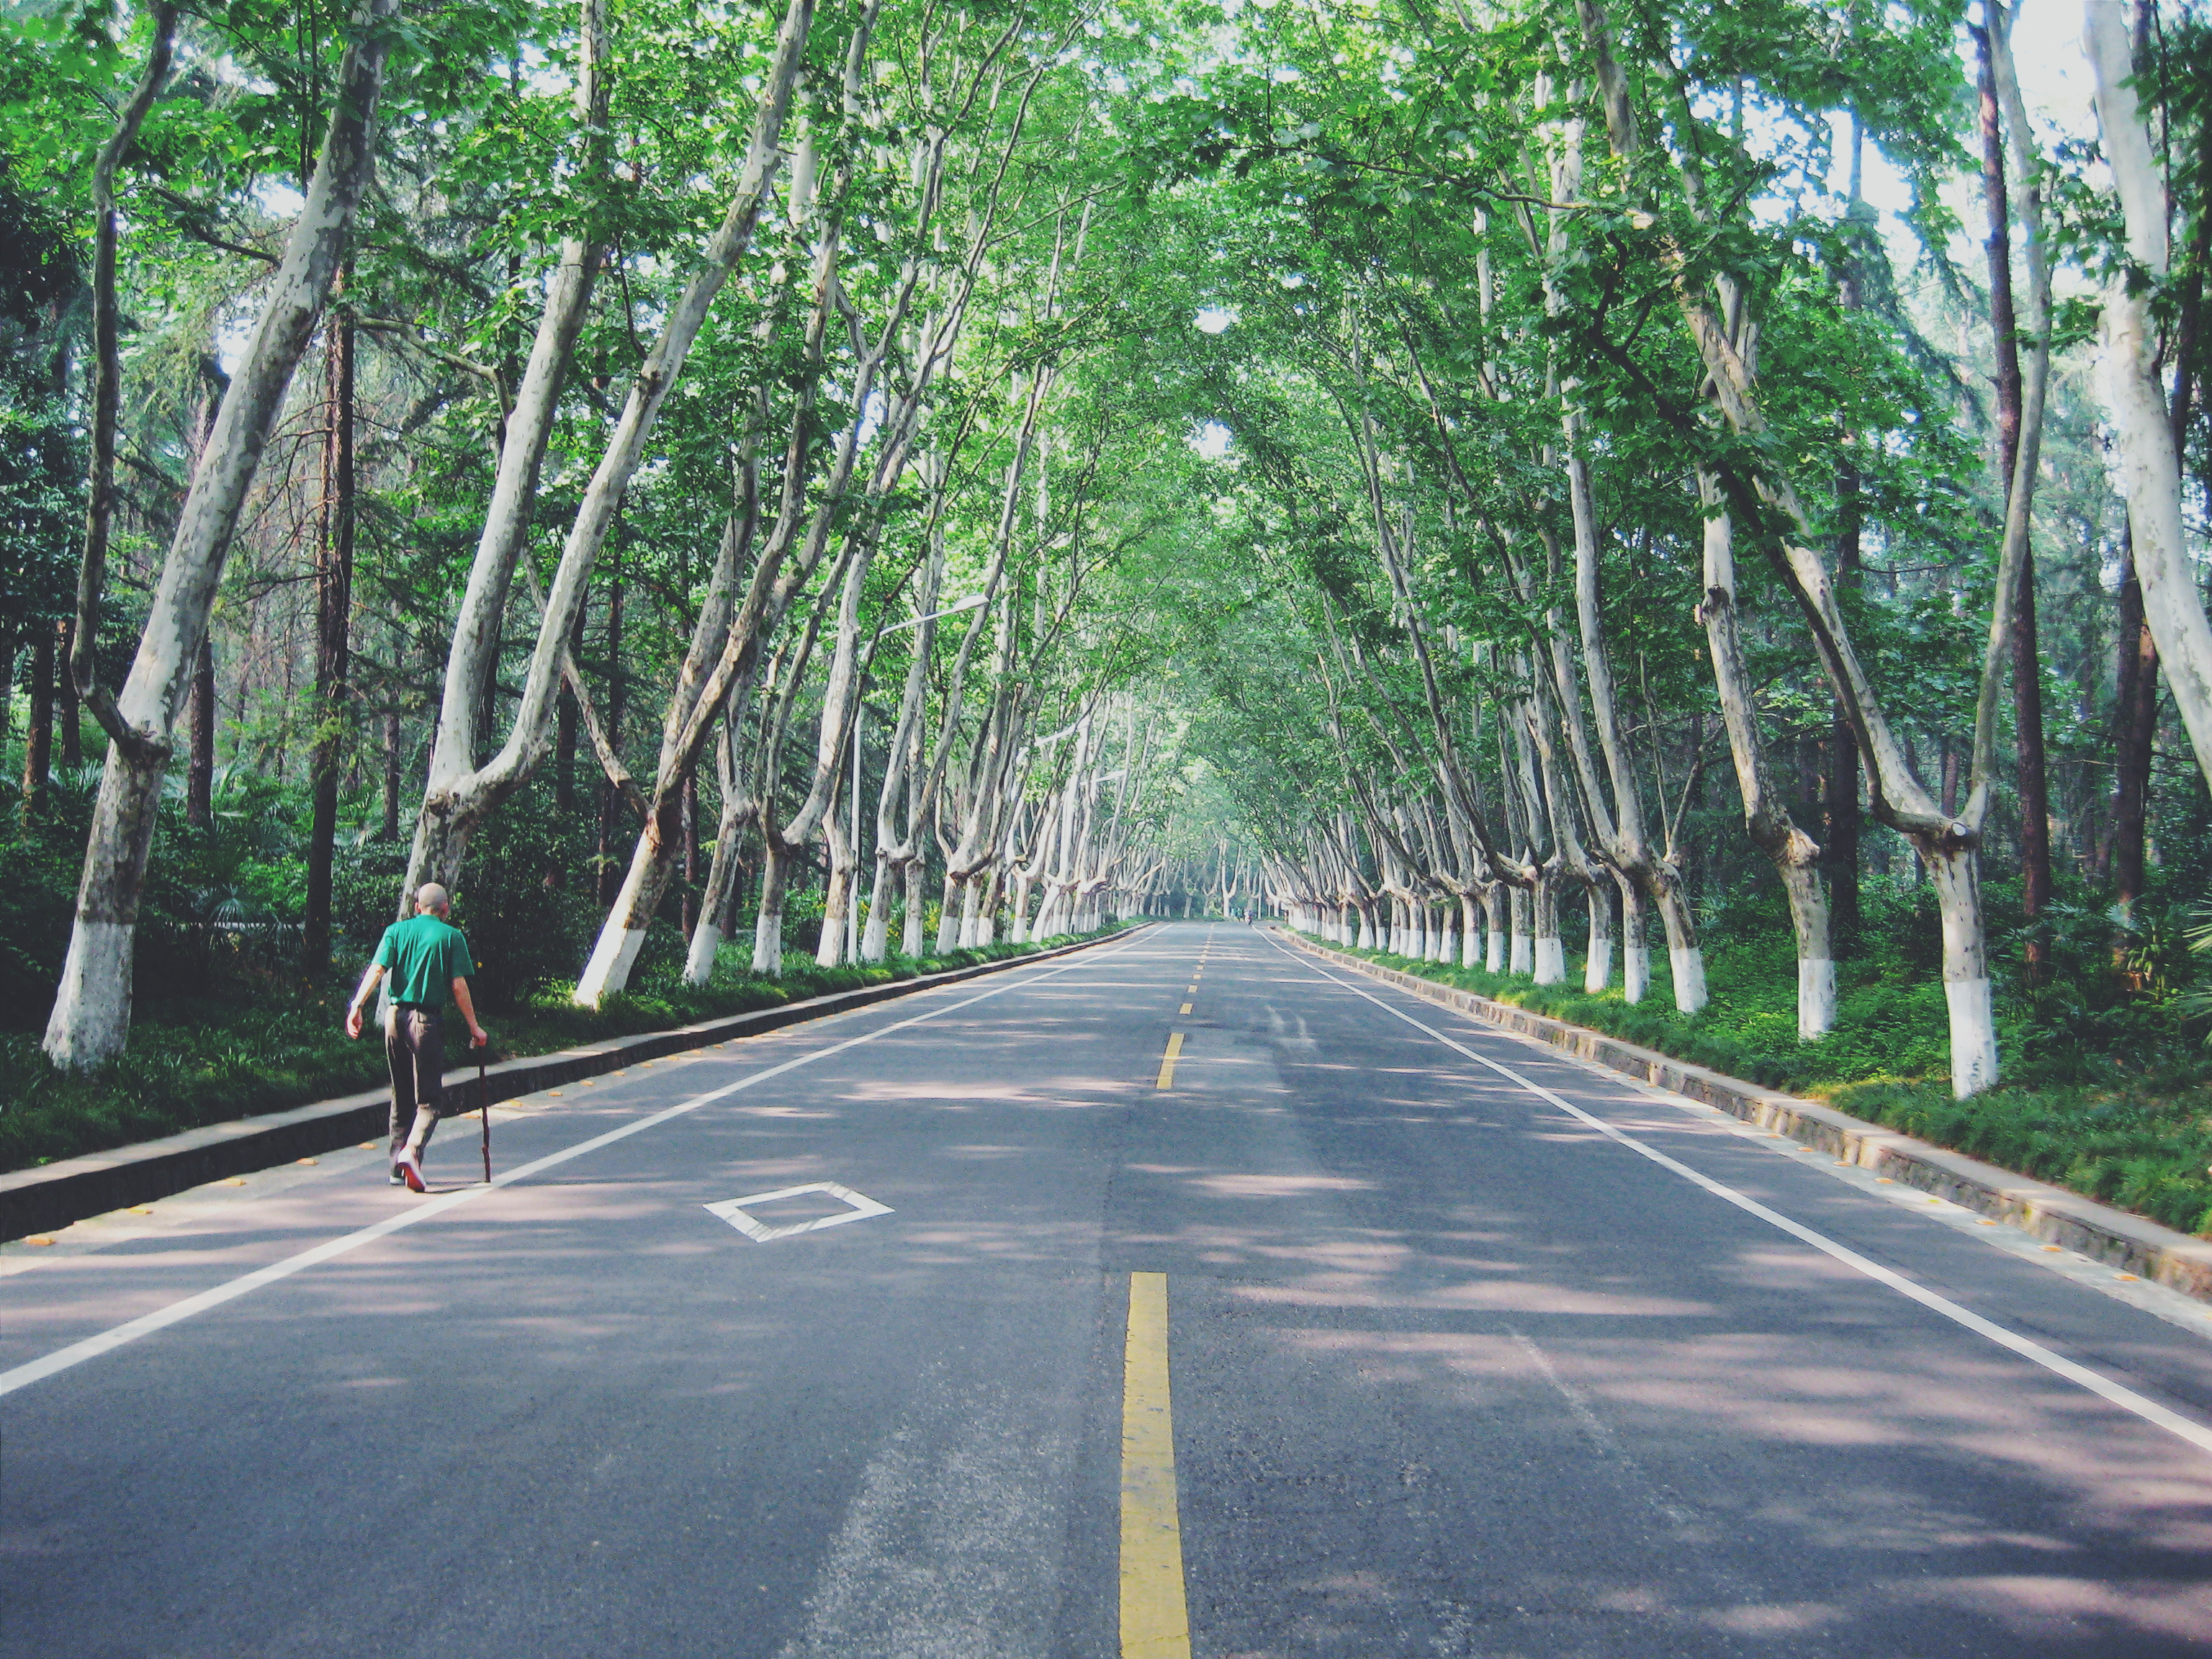 Улица шоссе. Пешеходная аллея. Деревья над дорогой. Длинная улица с деревьями. Singapore дорога деревья.